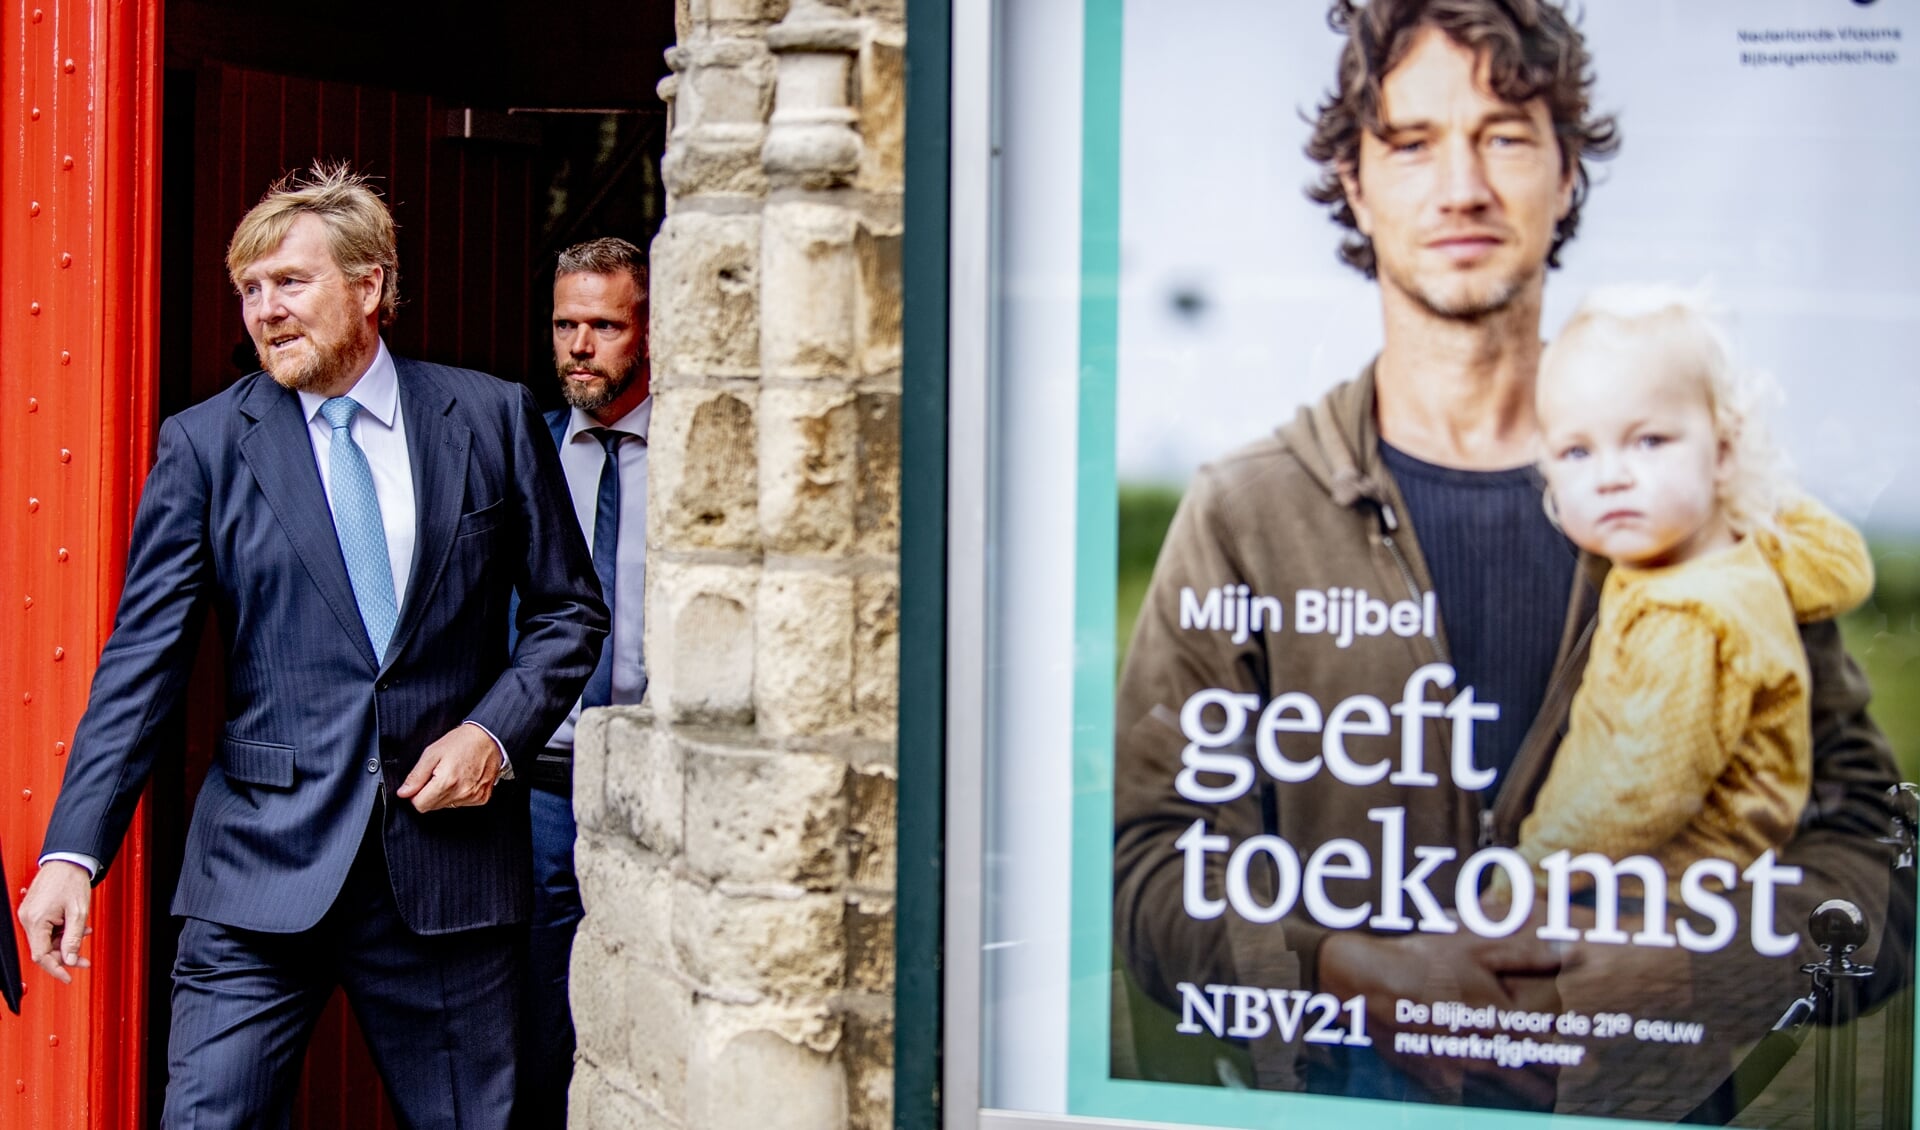 Koning Willem Alexander kreeg deze week in de Grote Kerk in Den Haag het eerste exemplaar van de NBV21 aangeboden.